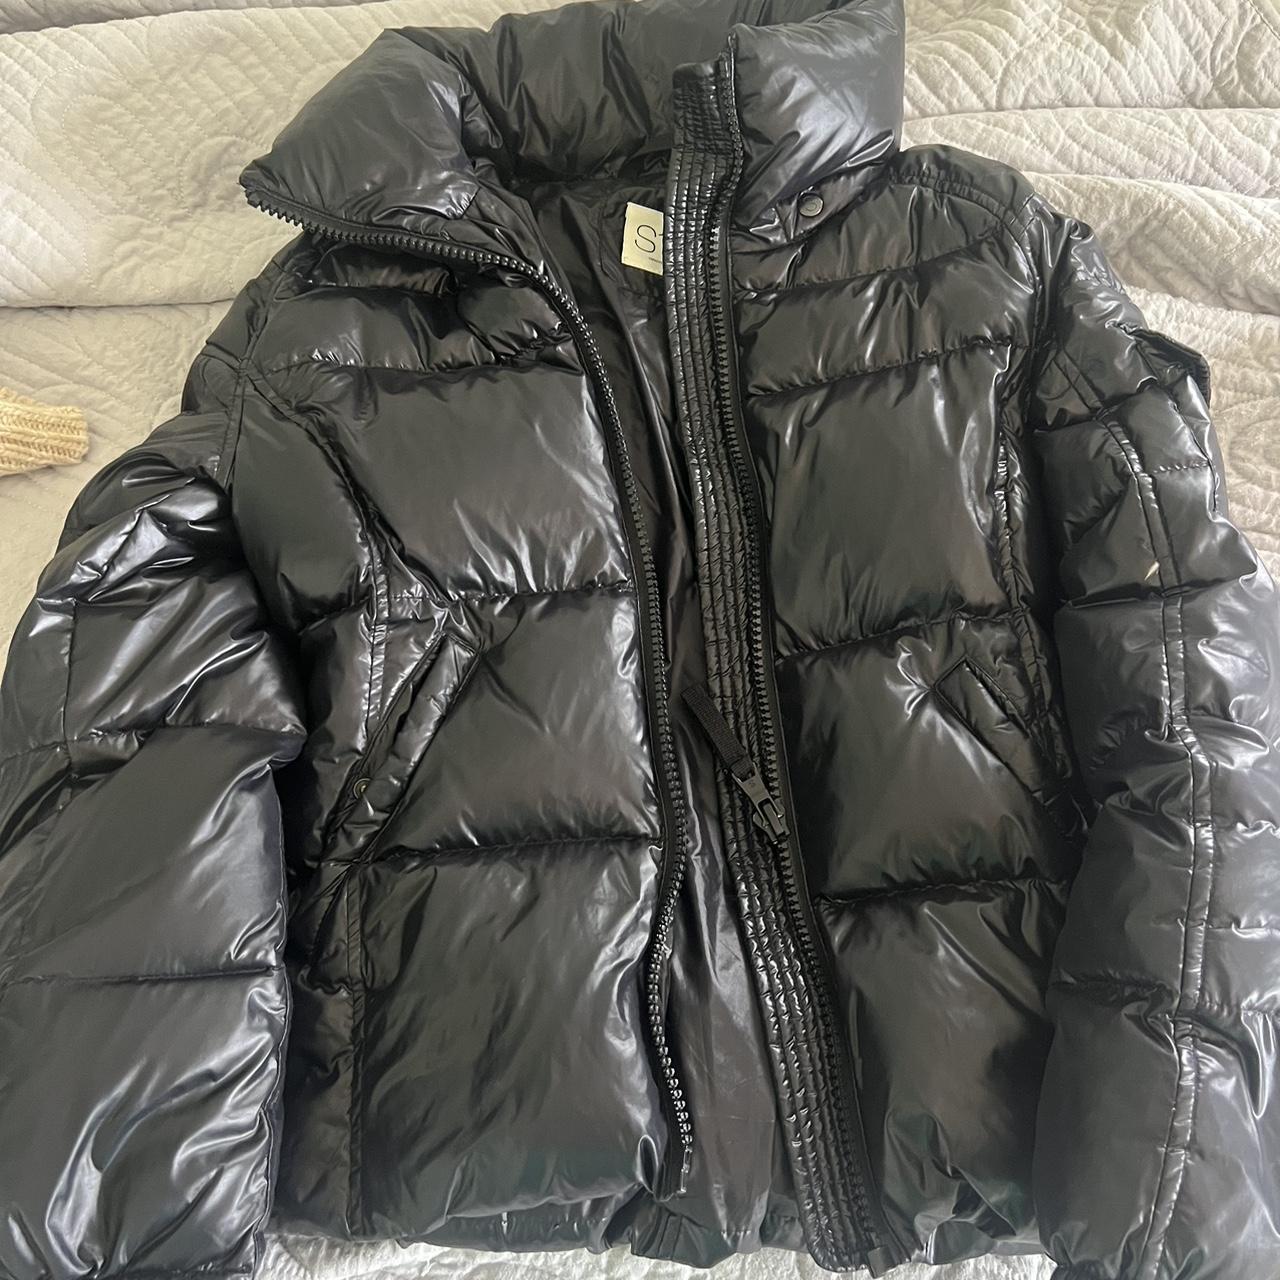 S13 black winter coat Size 14-13 girls Good conditions - Depop